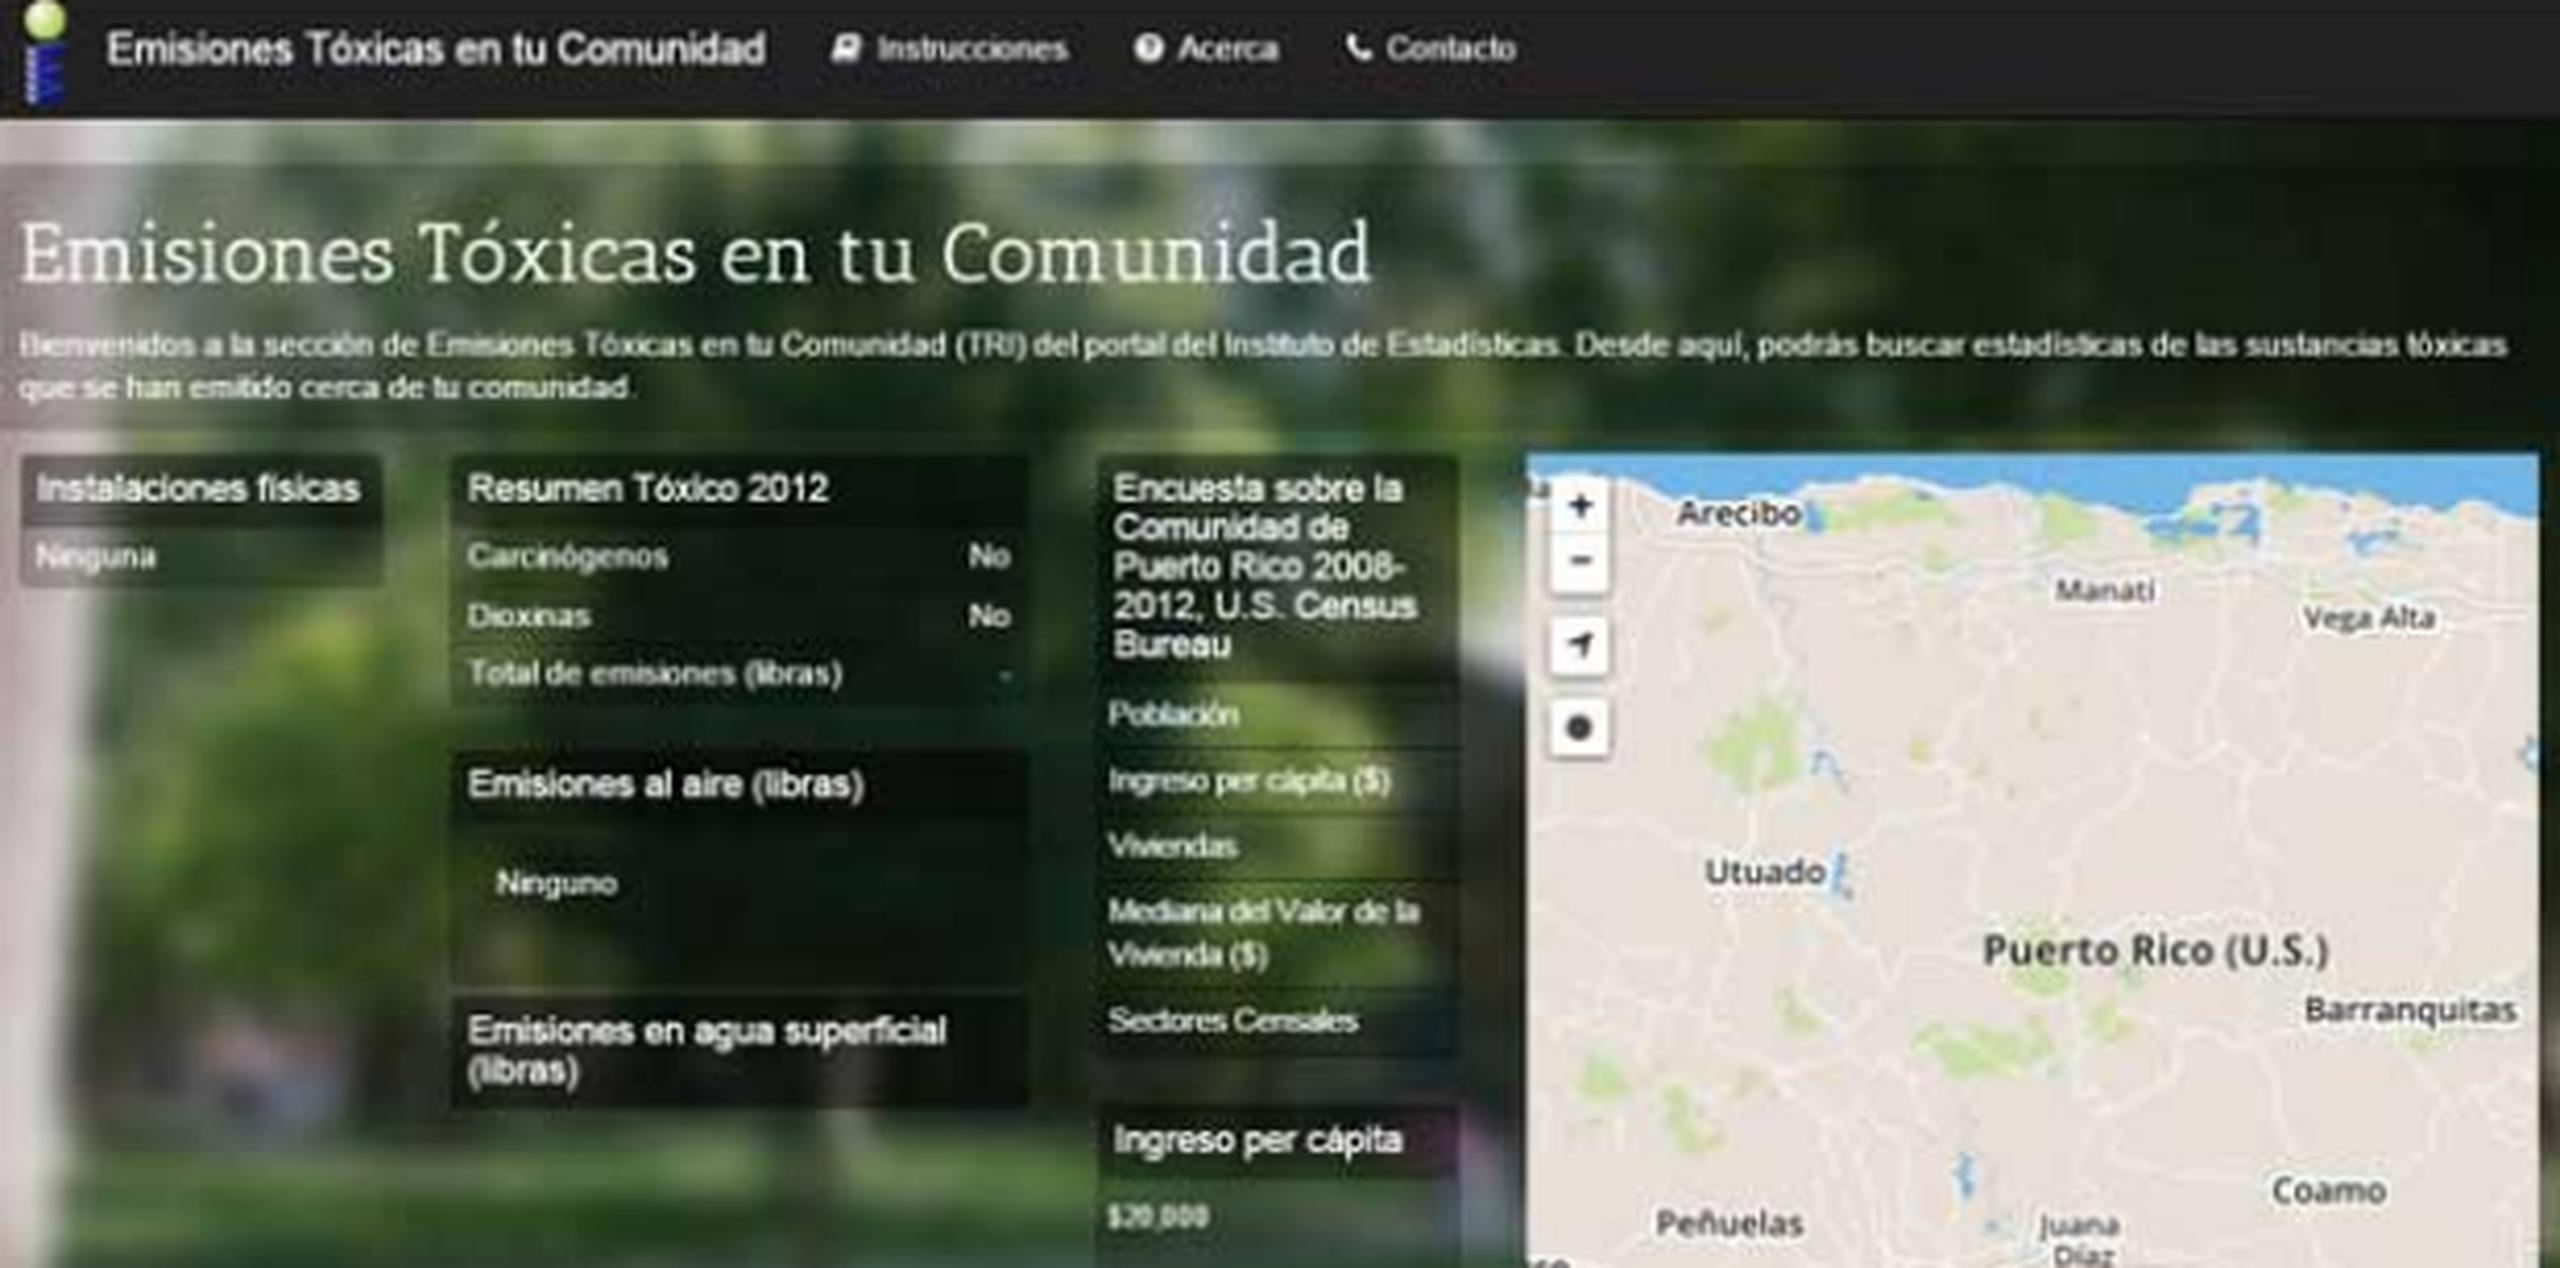 El portal permite conocer los tóxicos de mayor emisión y presenta estadísticas socio económicas de las comunidades con información en español.
(www.emisionestoxicaspr.org)